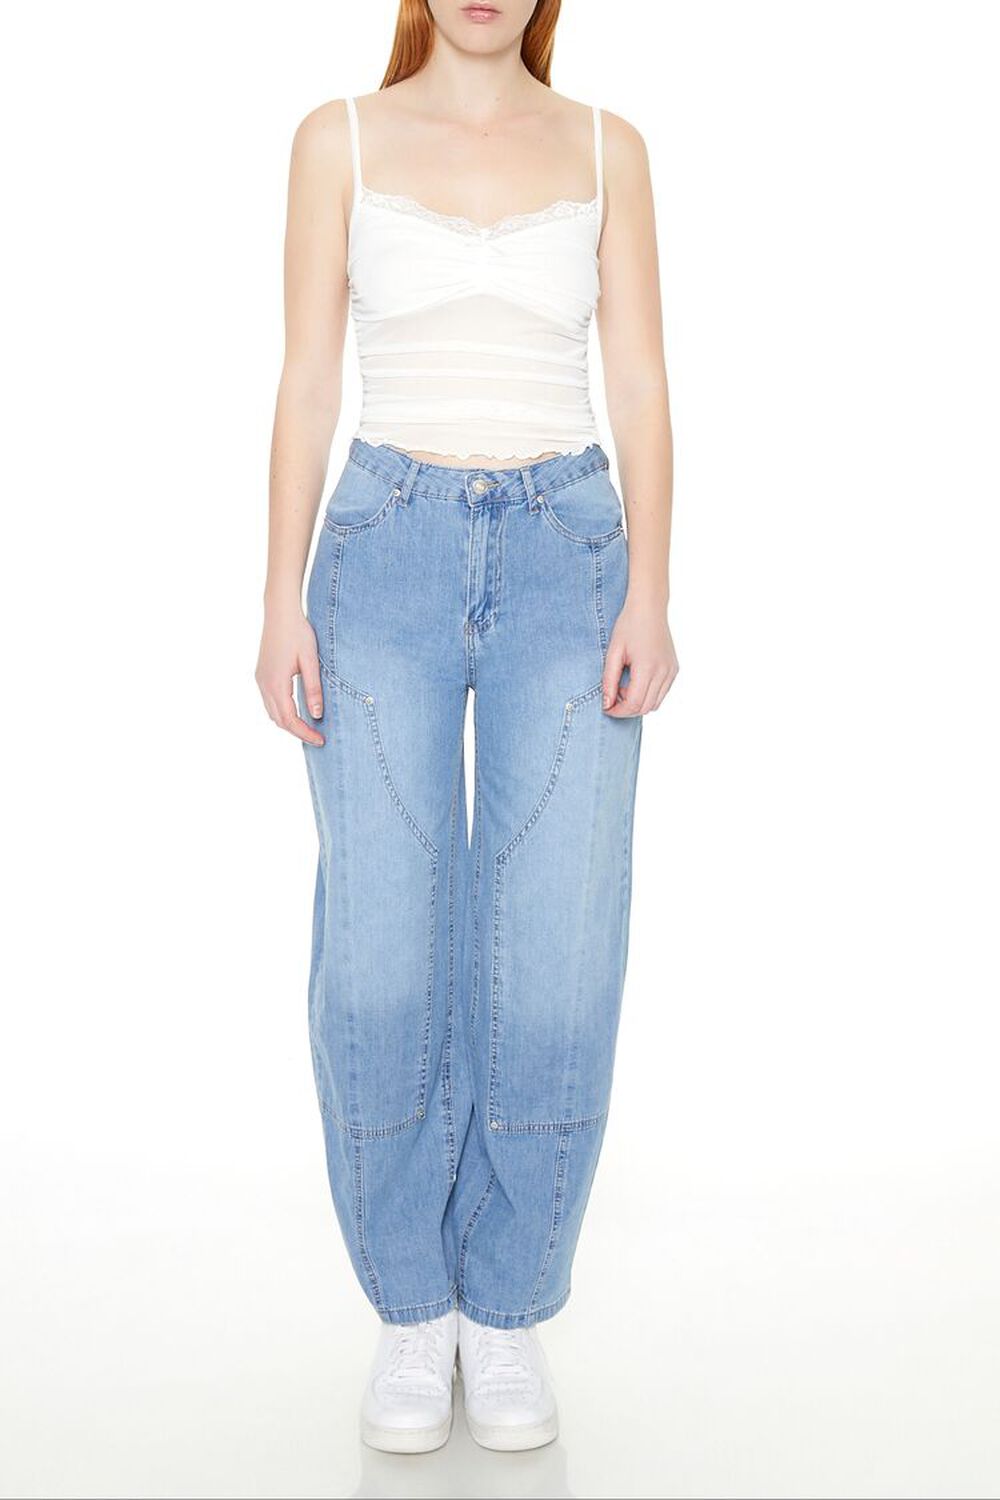 LIGHT DENIM High-Rise Barrel Jeans, image 1